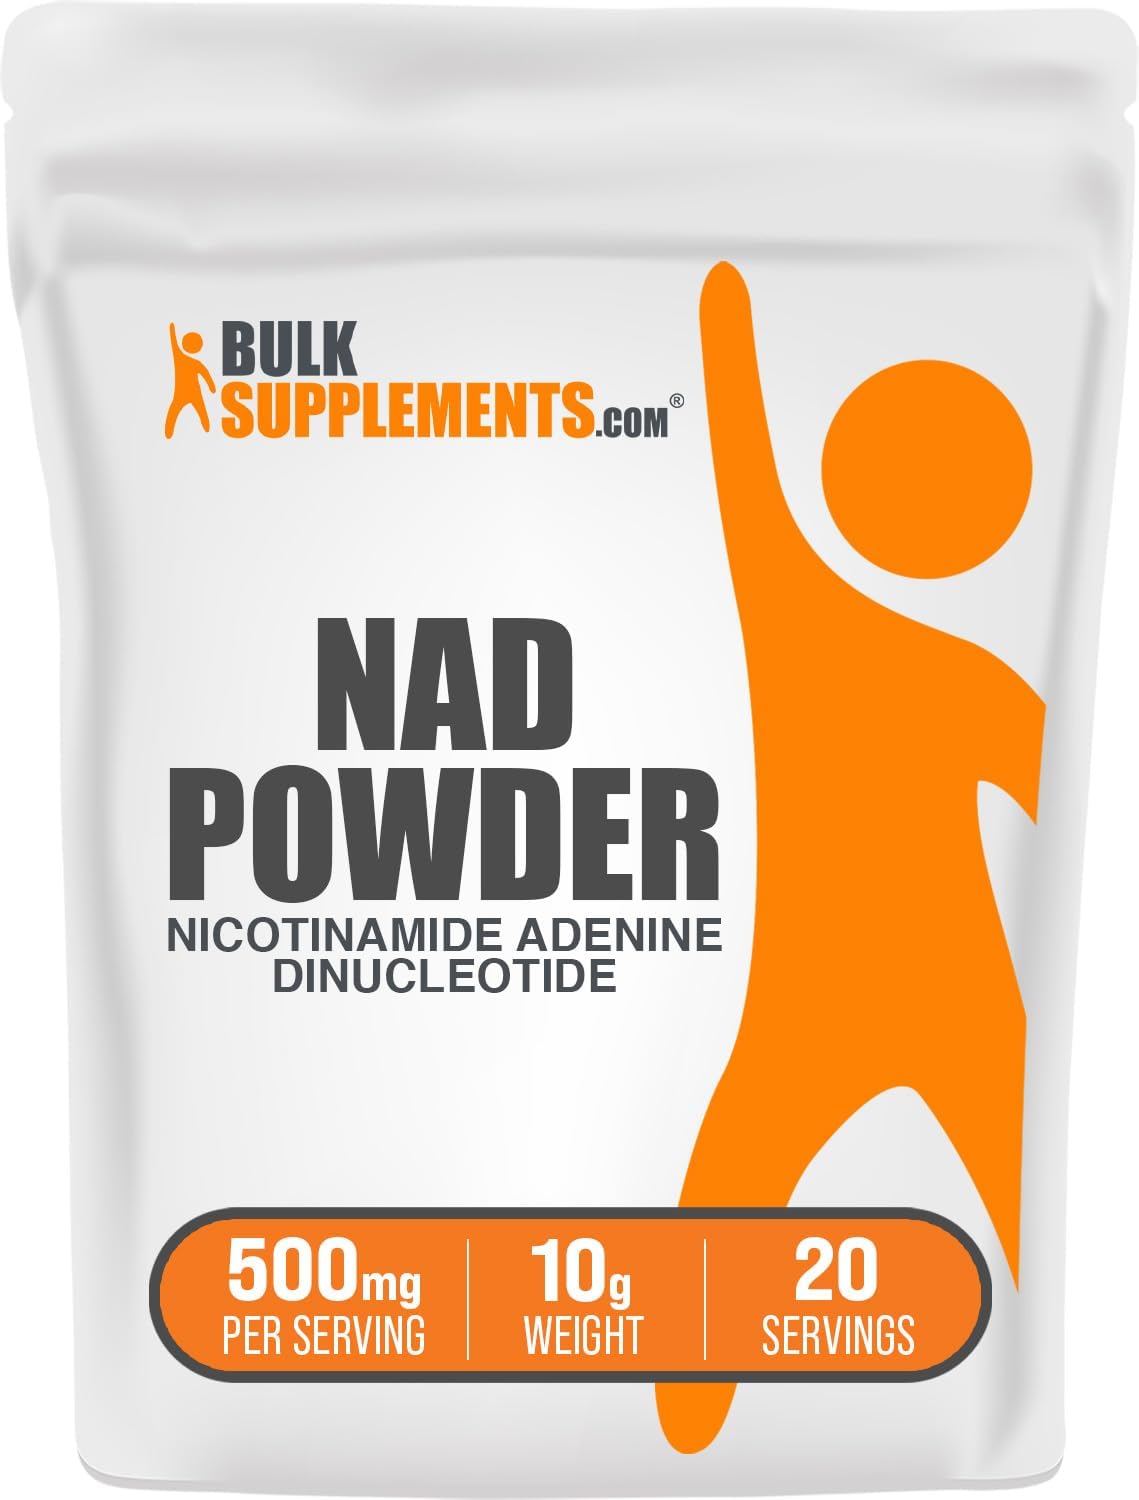 BulkSupplements.com Nicotinamide Adenine Dinucleotide (NAD) powder 10g bag